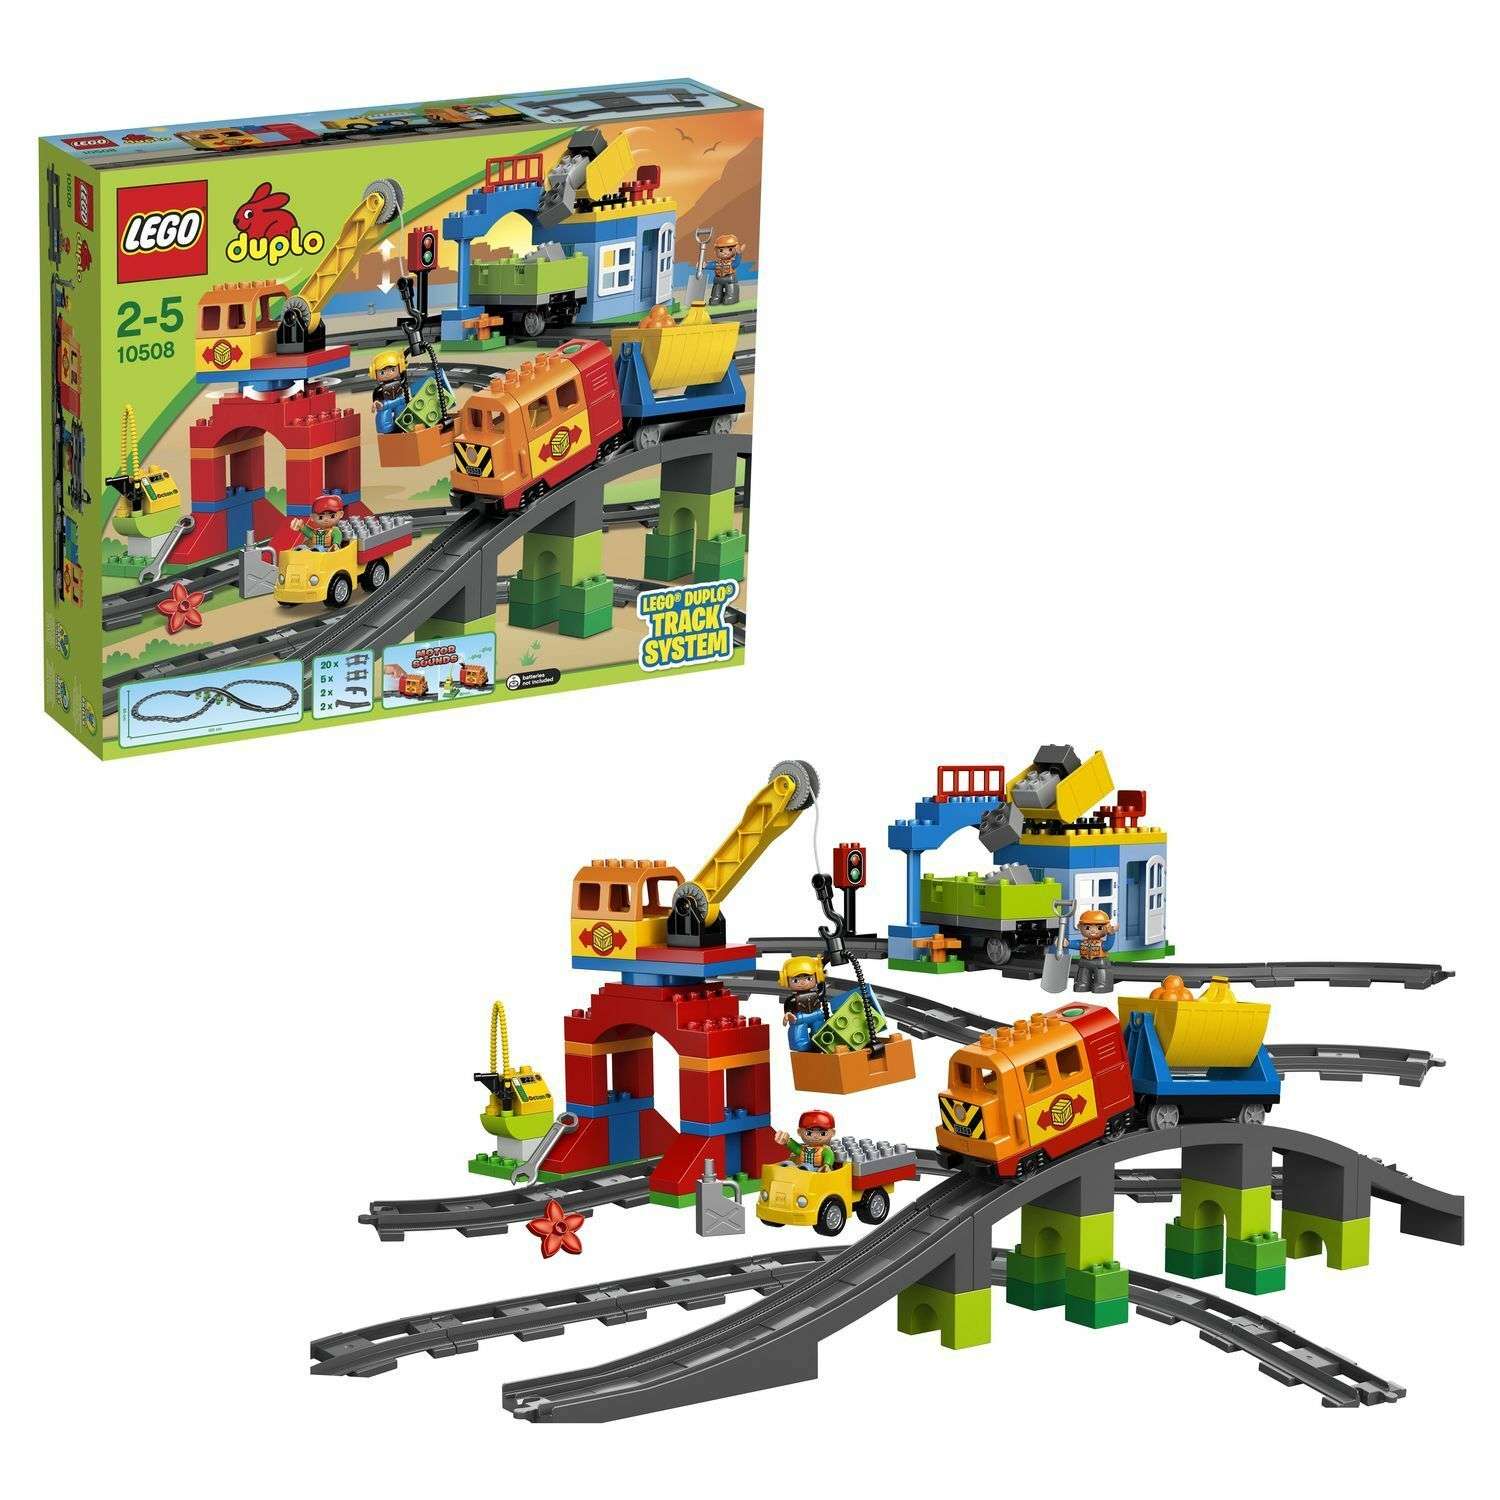 Отзывы про LEGO Duplo 10508 Большой поезд